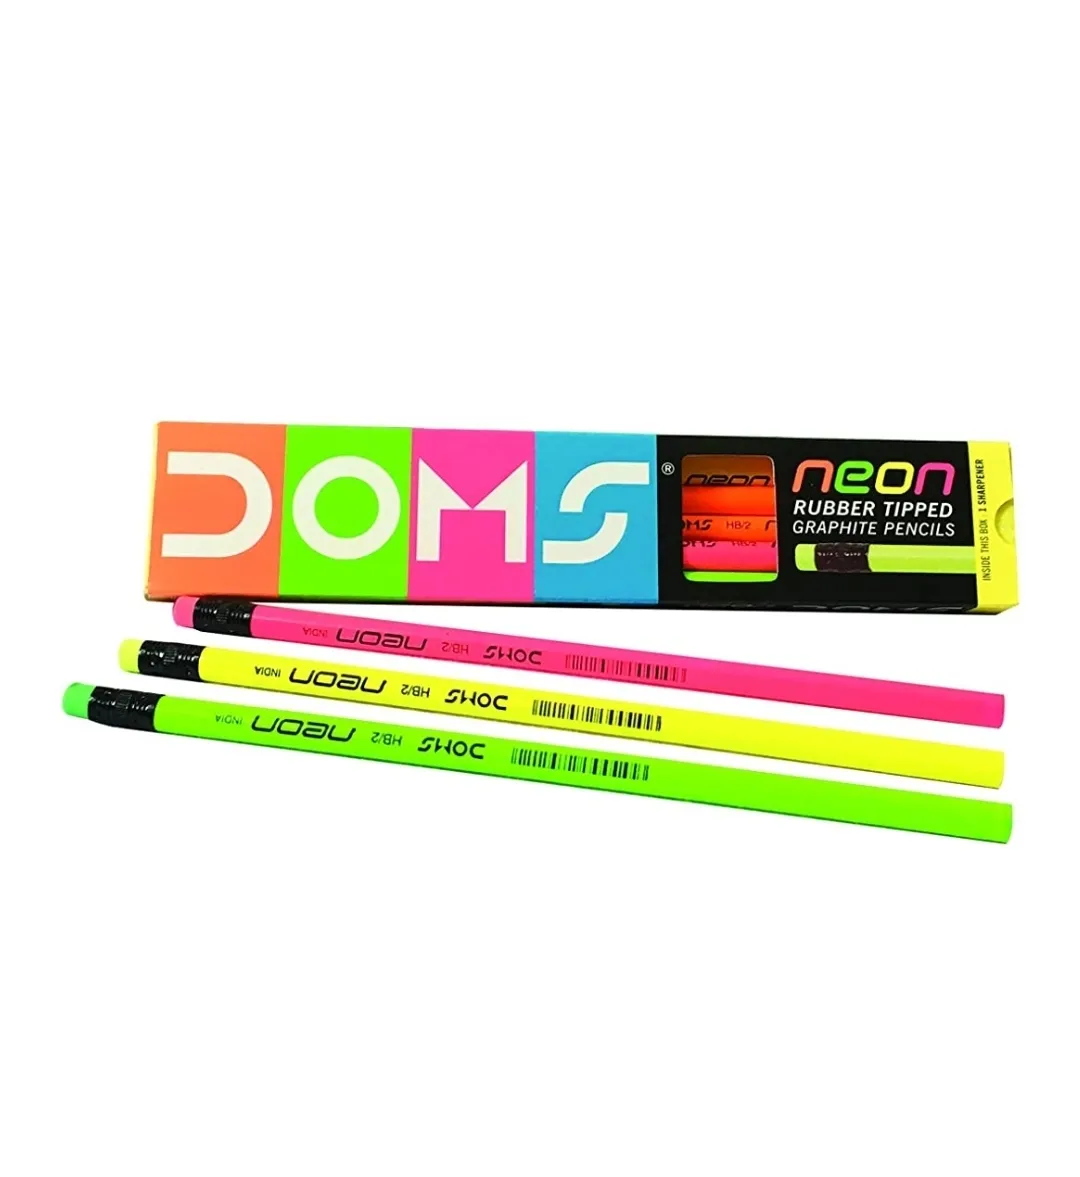 Doms Neon Pencils Neon Colour 10 Pack of 10 Pencils(100 Pencils)